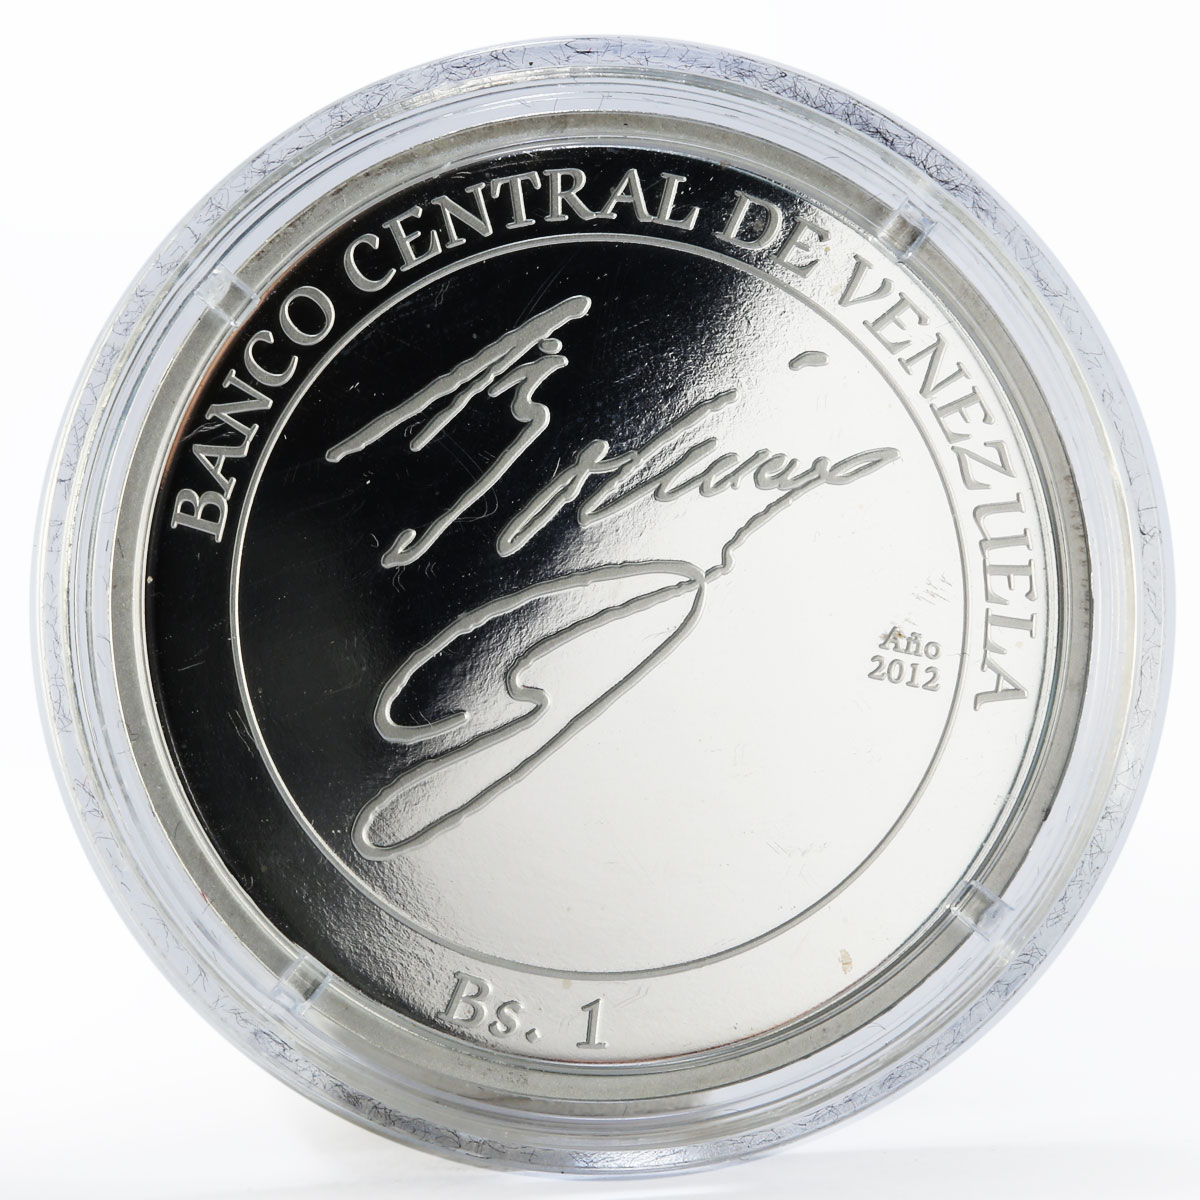 Venezuela 1 bolivar Simon Bolivar proof silver coin 2012